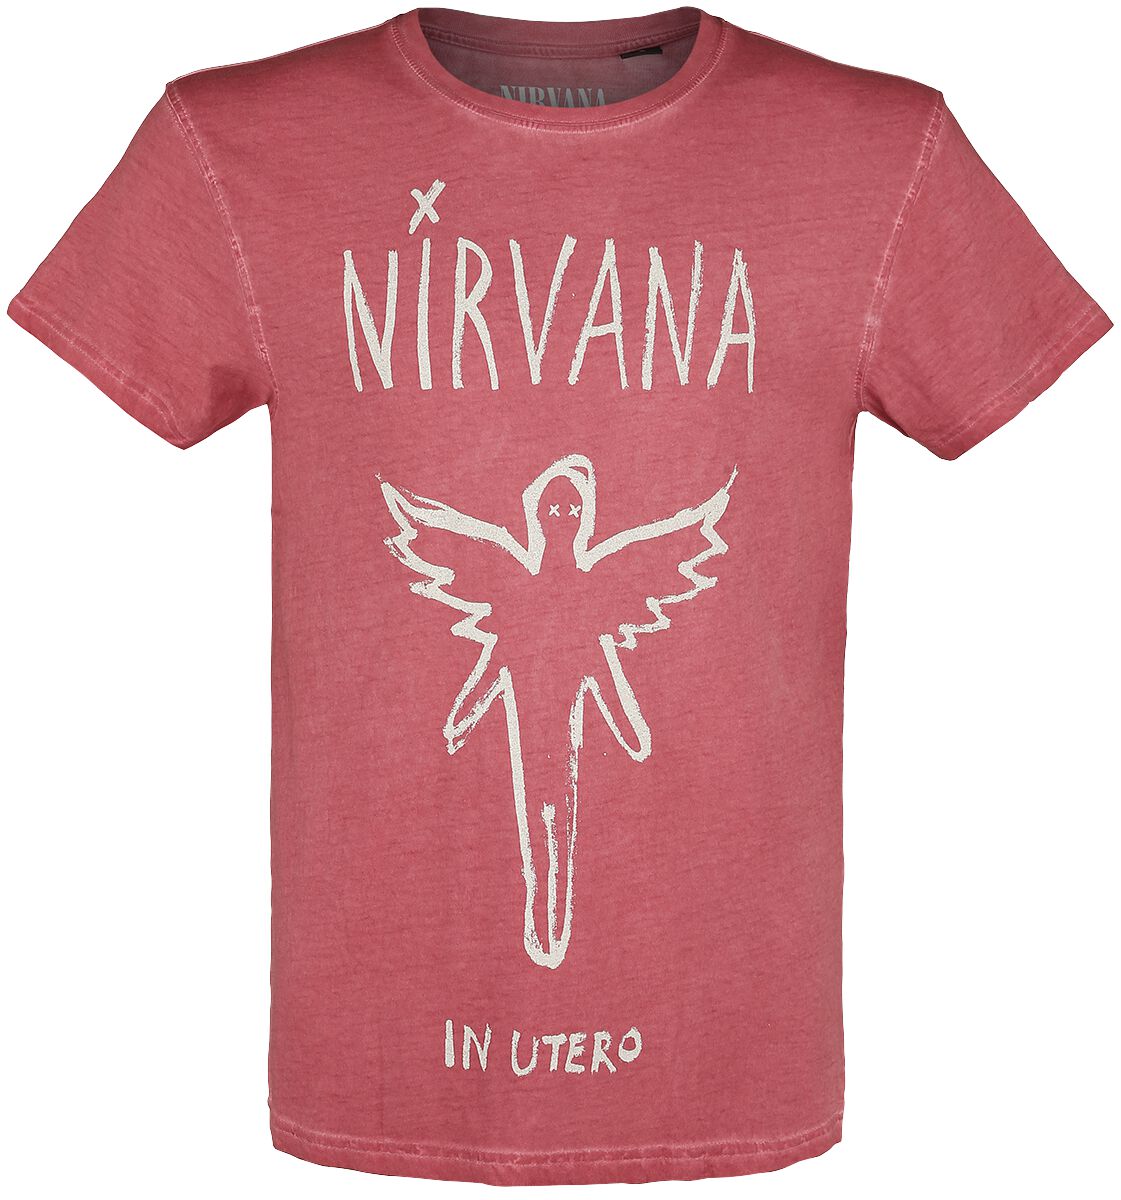 Nirvana T-Shirt - In Utero - S bis XXL - für Männer - Größe S - rot  - Lizenziertes Merchandise!